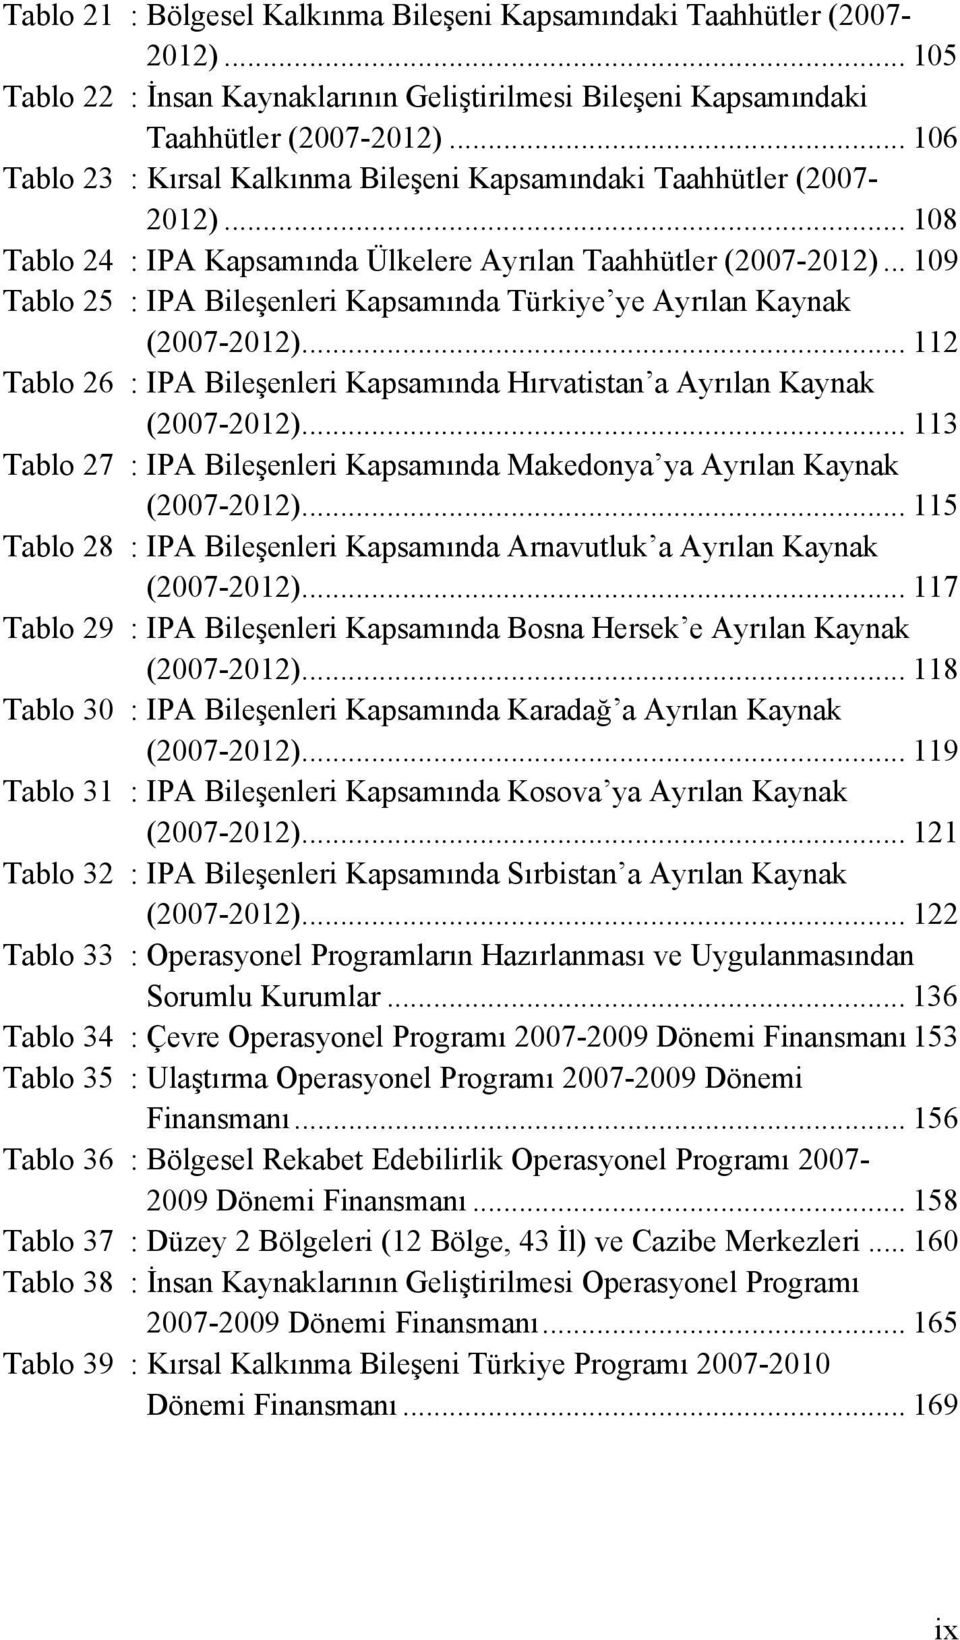 .. 109 Tablo 25 : IPA Bileşenleri Kapsamında Türkiye ye Ayrılan Kaynak (2007-2012)... 112 Tablo 26 : IPA Bileşenleri Kapsamında Hırvatistan a Ayrılan Kaynak (2007-2012).